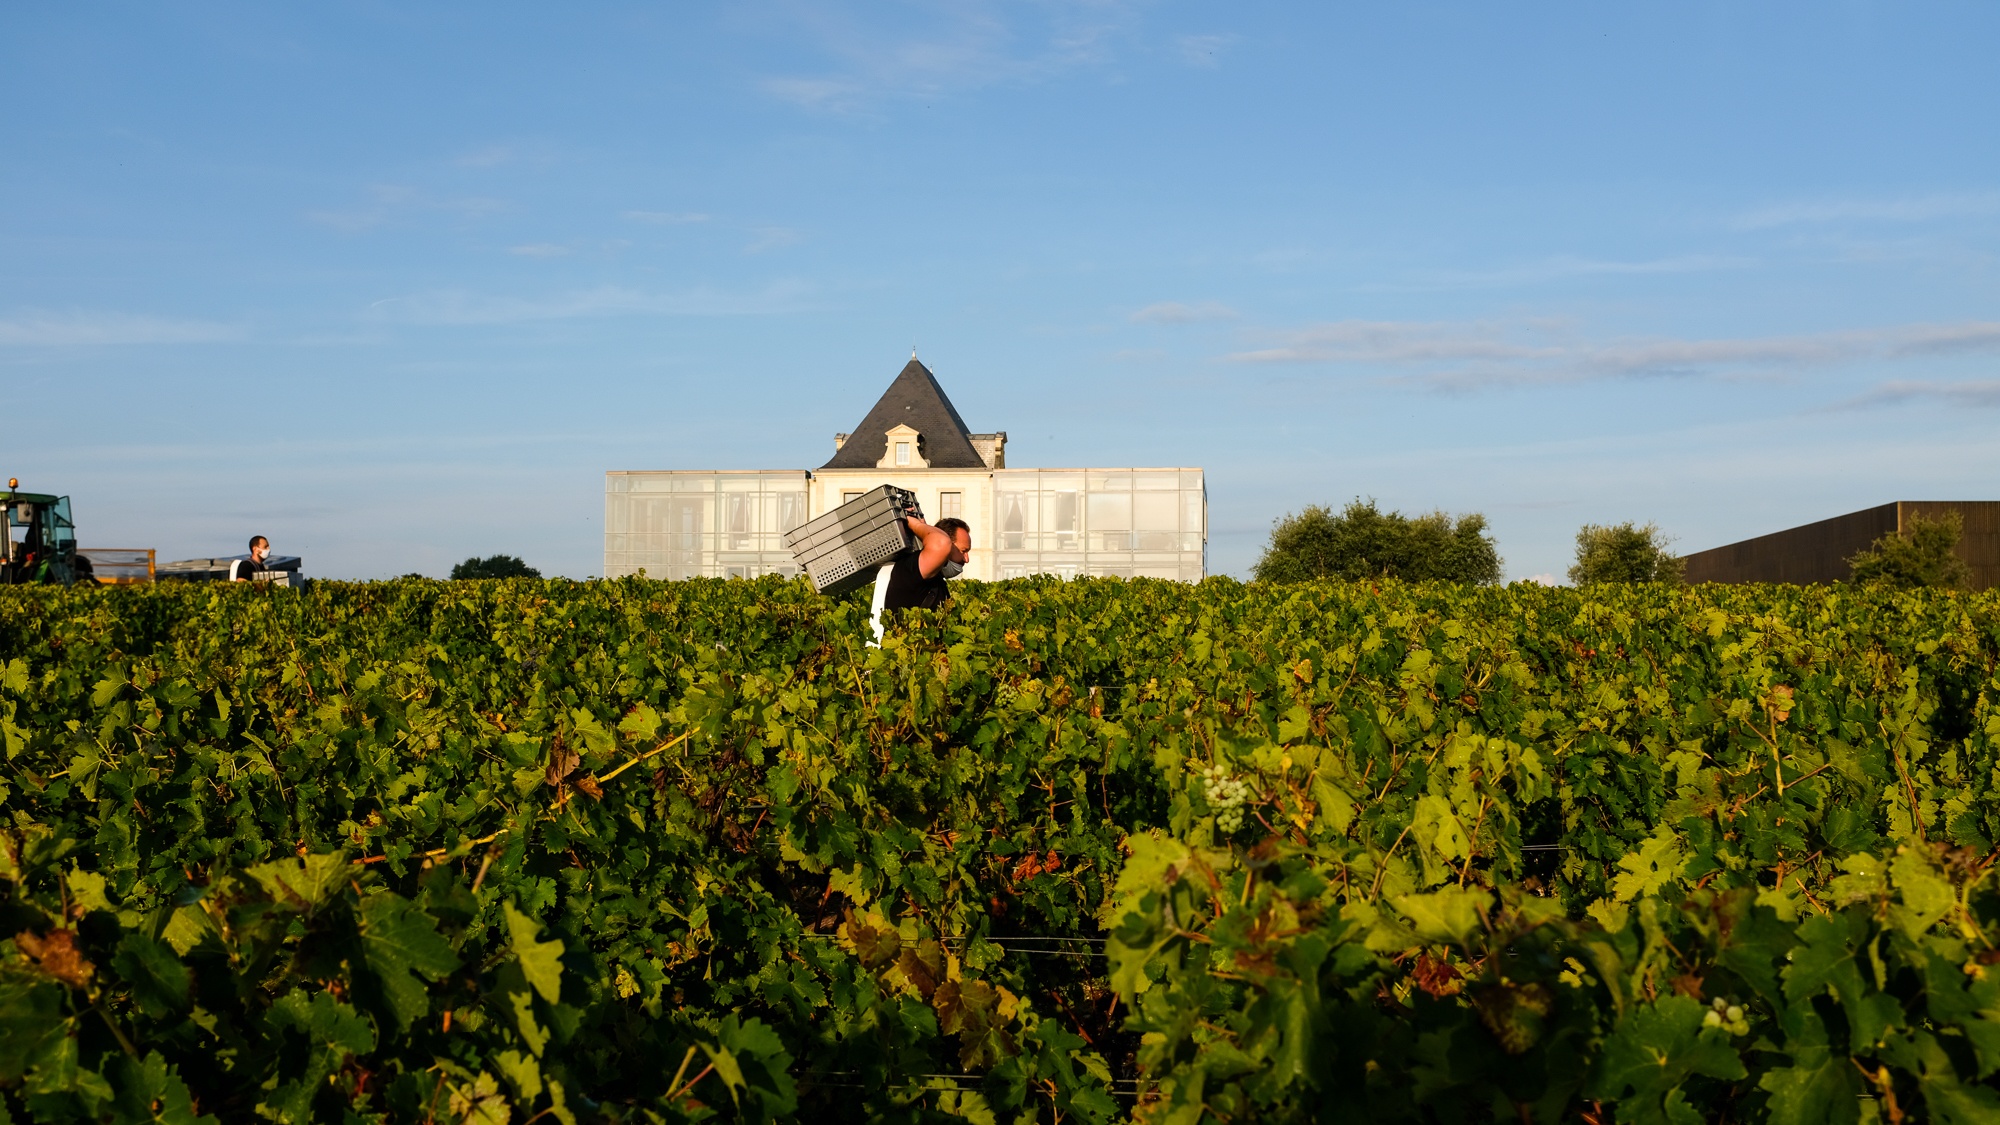 La viticulture, un rempart contre l’exclusion? - Chateau Pedesclaux